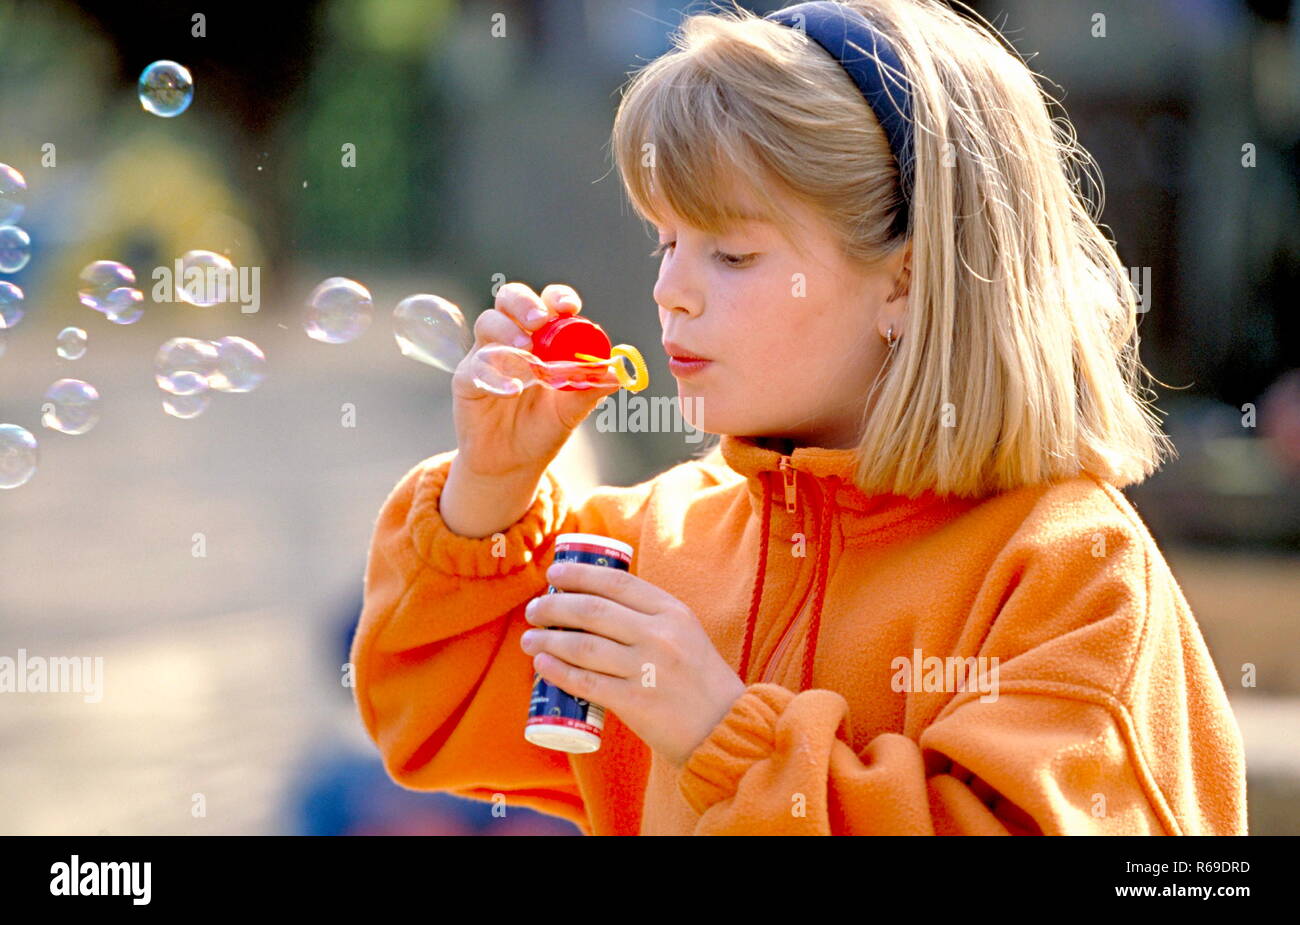 Portrait, Outdoor, blondes Maedchen mit orangem Sweater spielt mit Seifenblasen Stock Photo